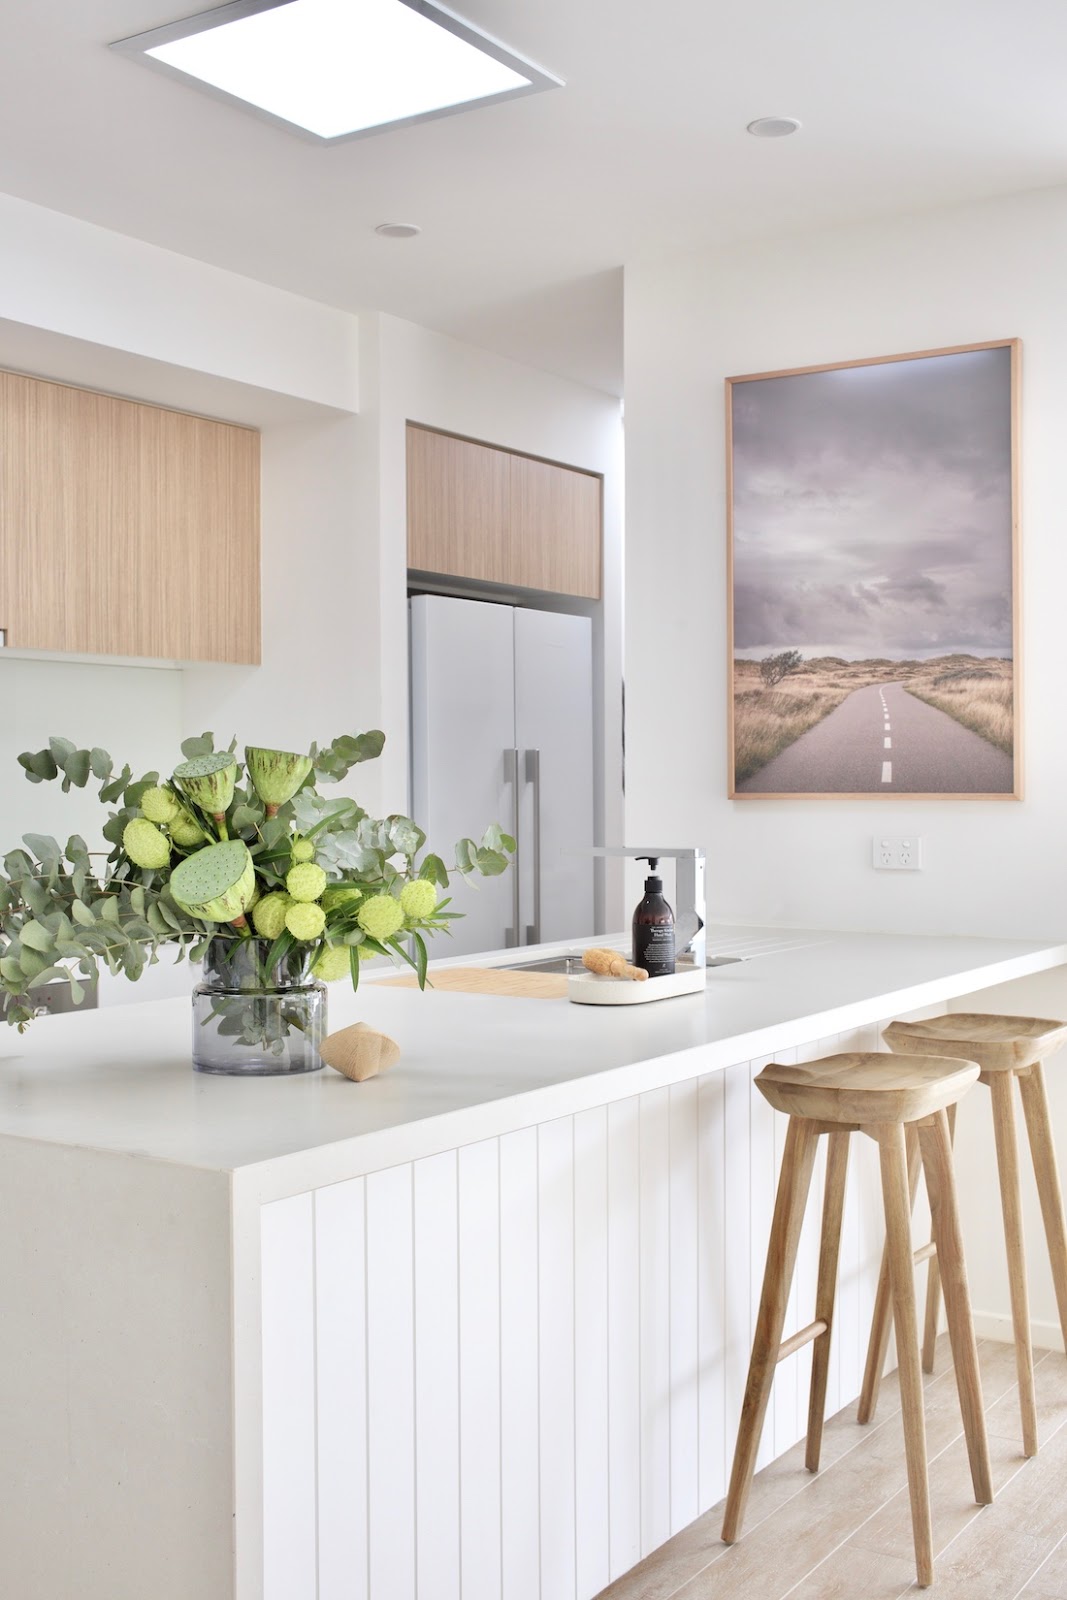 ilaria fatone - contemporary panelling - kitchen